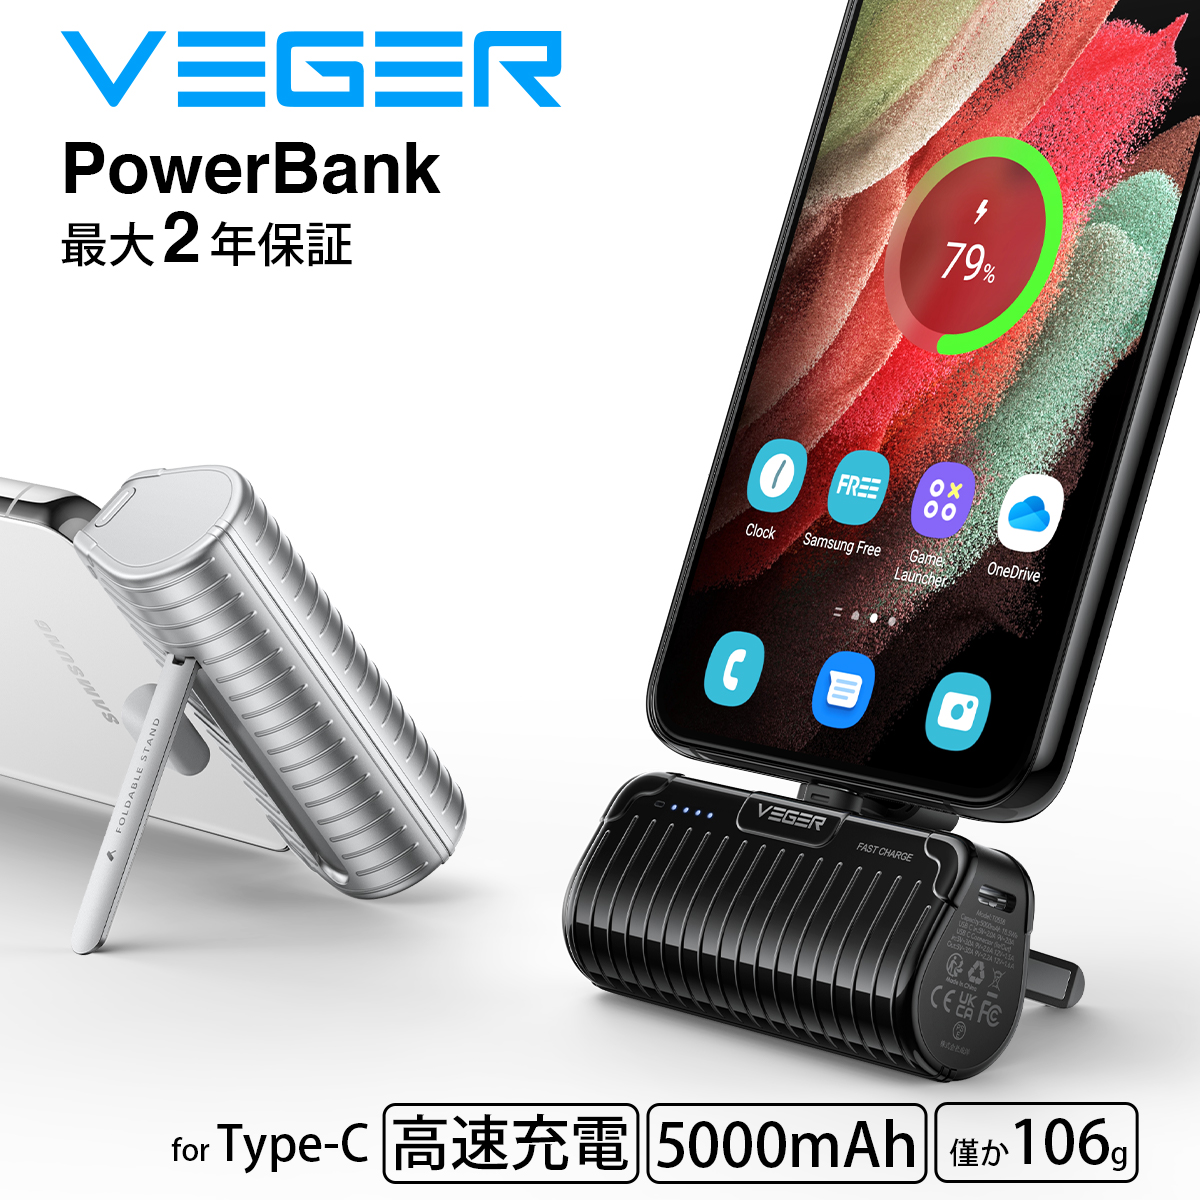 VEGER PowerBank VP-0558C 5000mAh 20W 3A Type-C (モバイルバッテリー 大容量 5000mAh) ブラック ホワイト 超軽量 105g  iPhone AirPods Galaxy Android スマートフォン Switch スイッチ おりたたみスタンド付き